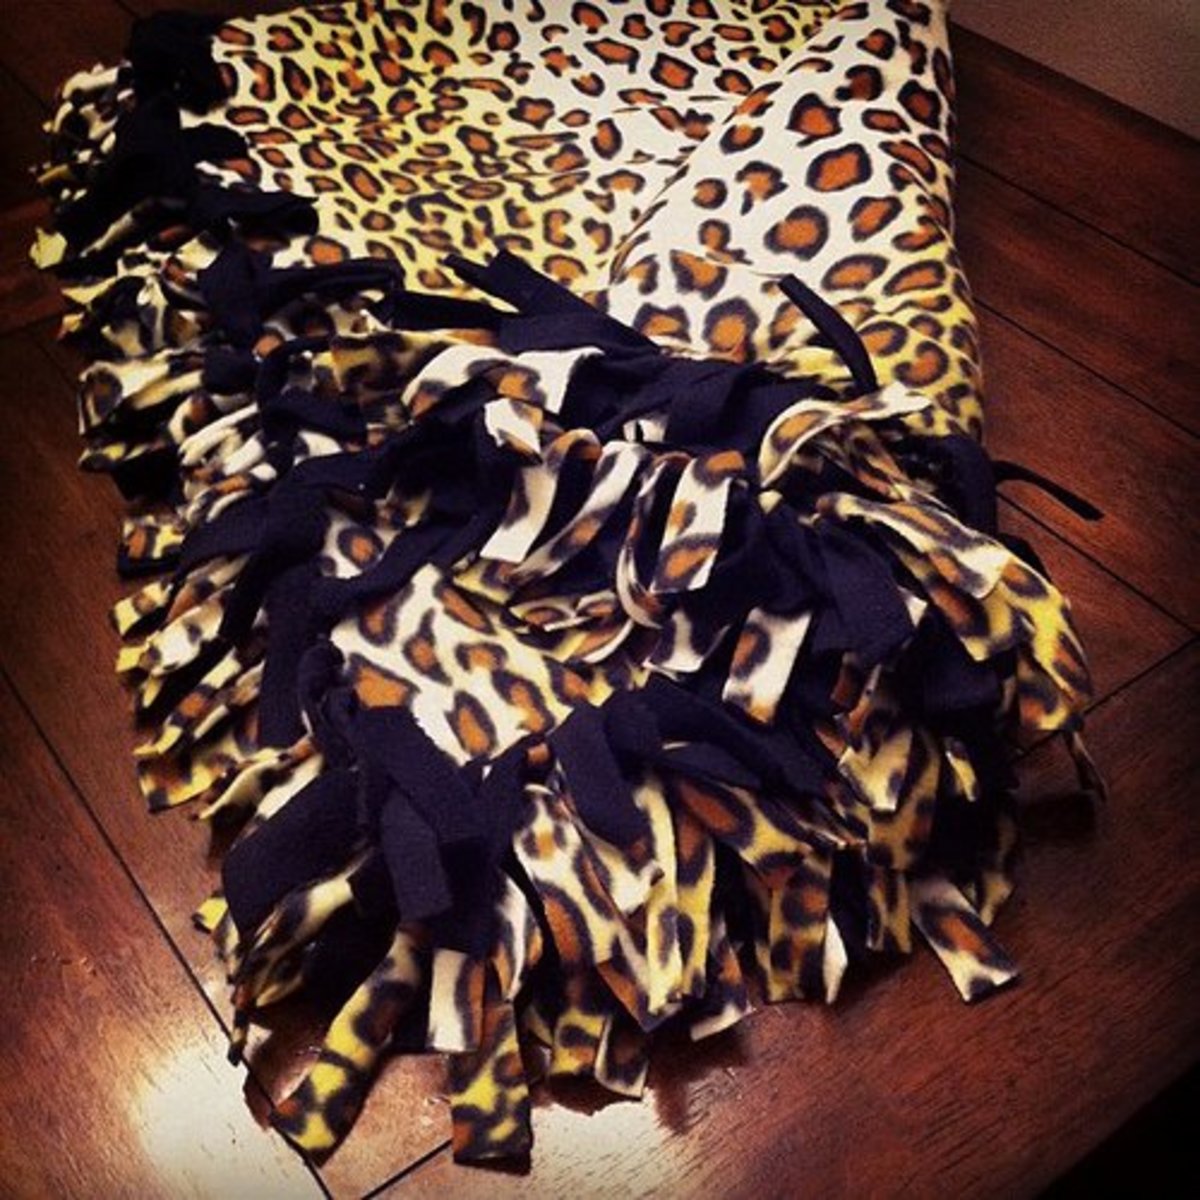 Leopard print fleece tie blanket